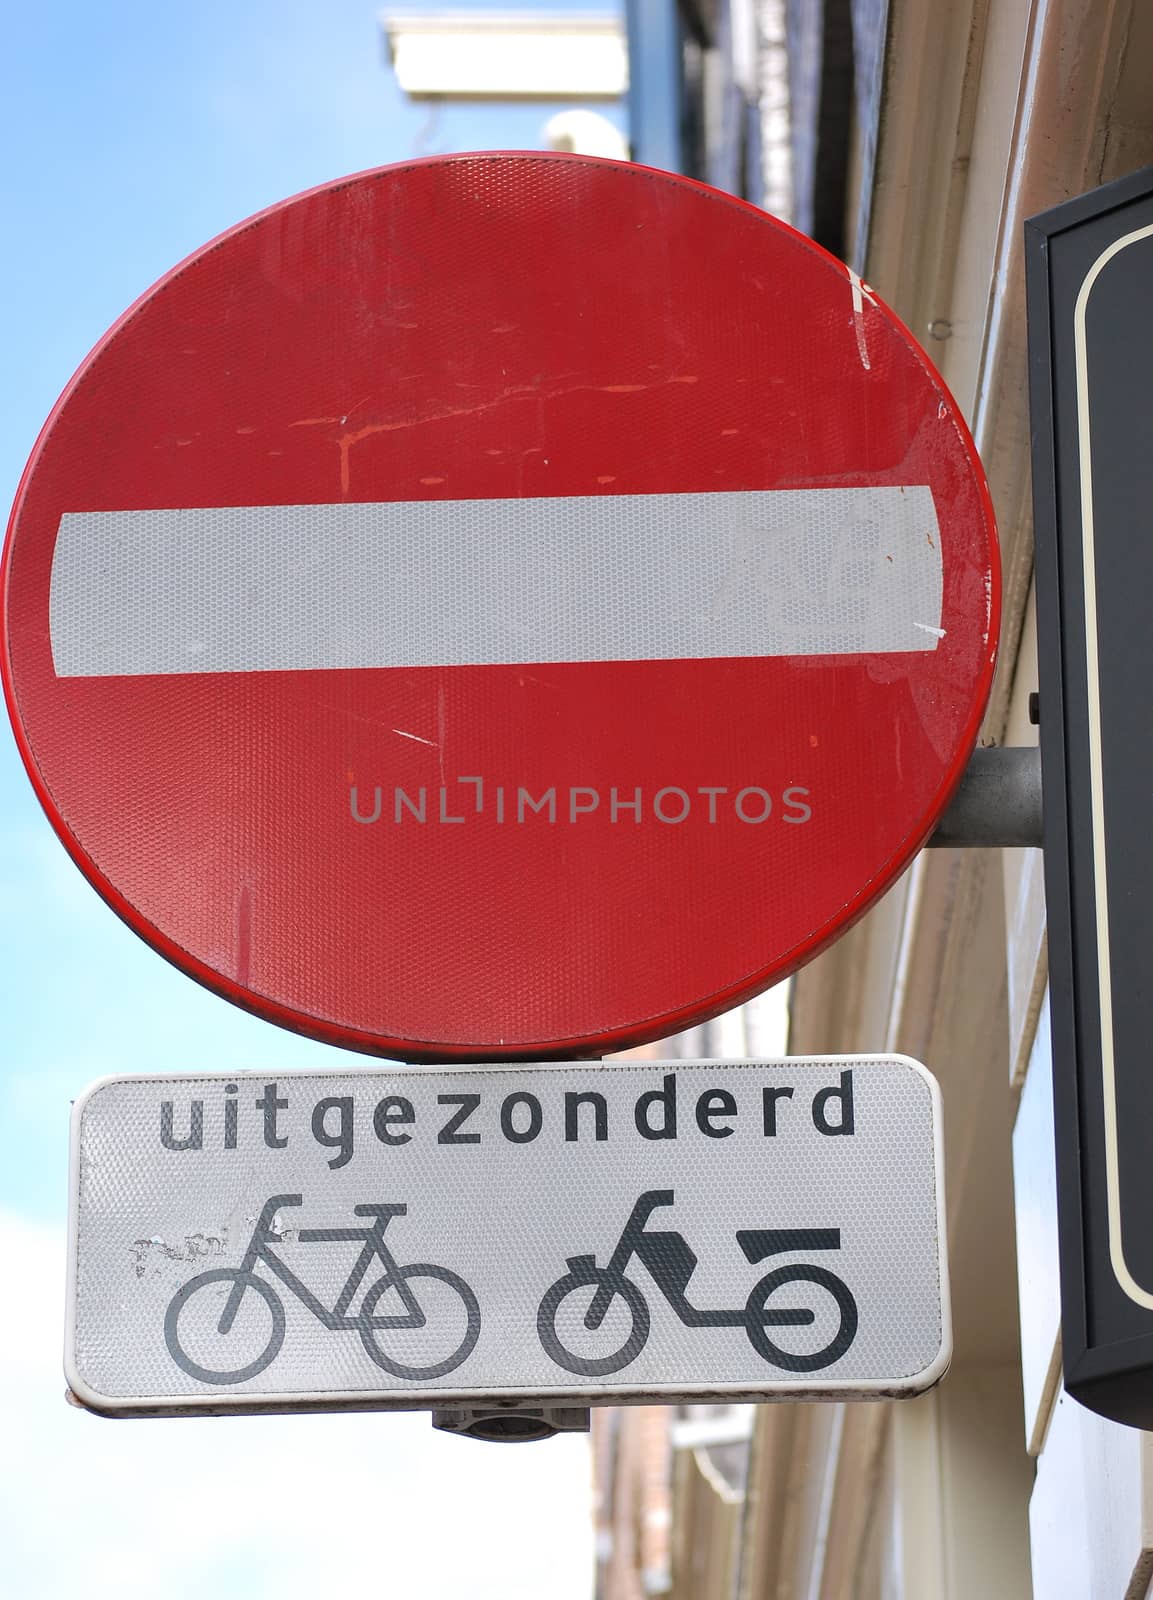 Amsterdam bikes. by oscarcwilliams